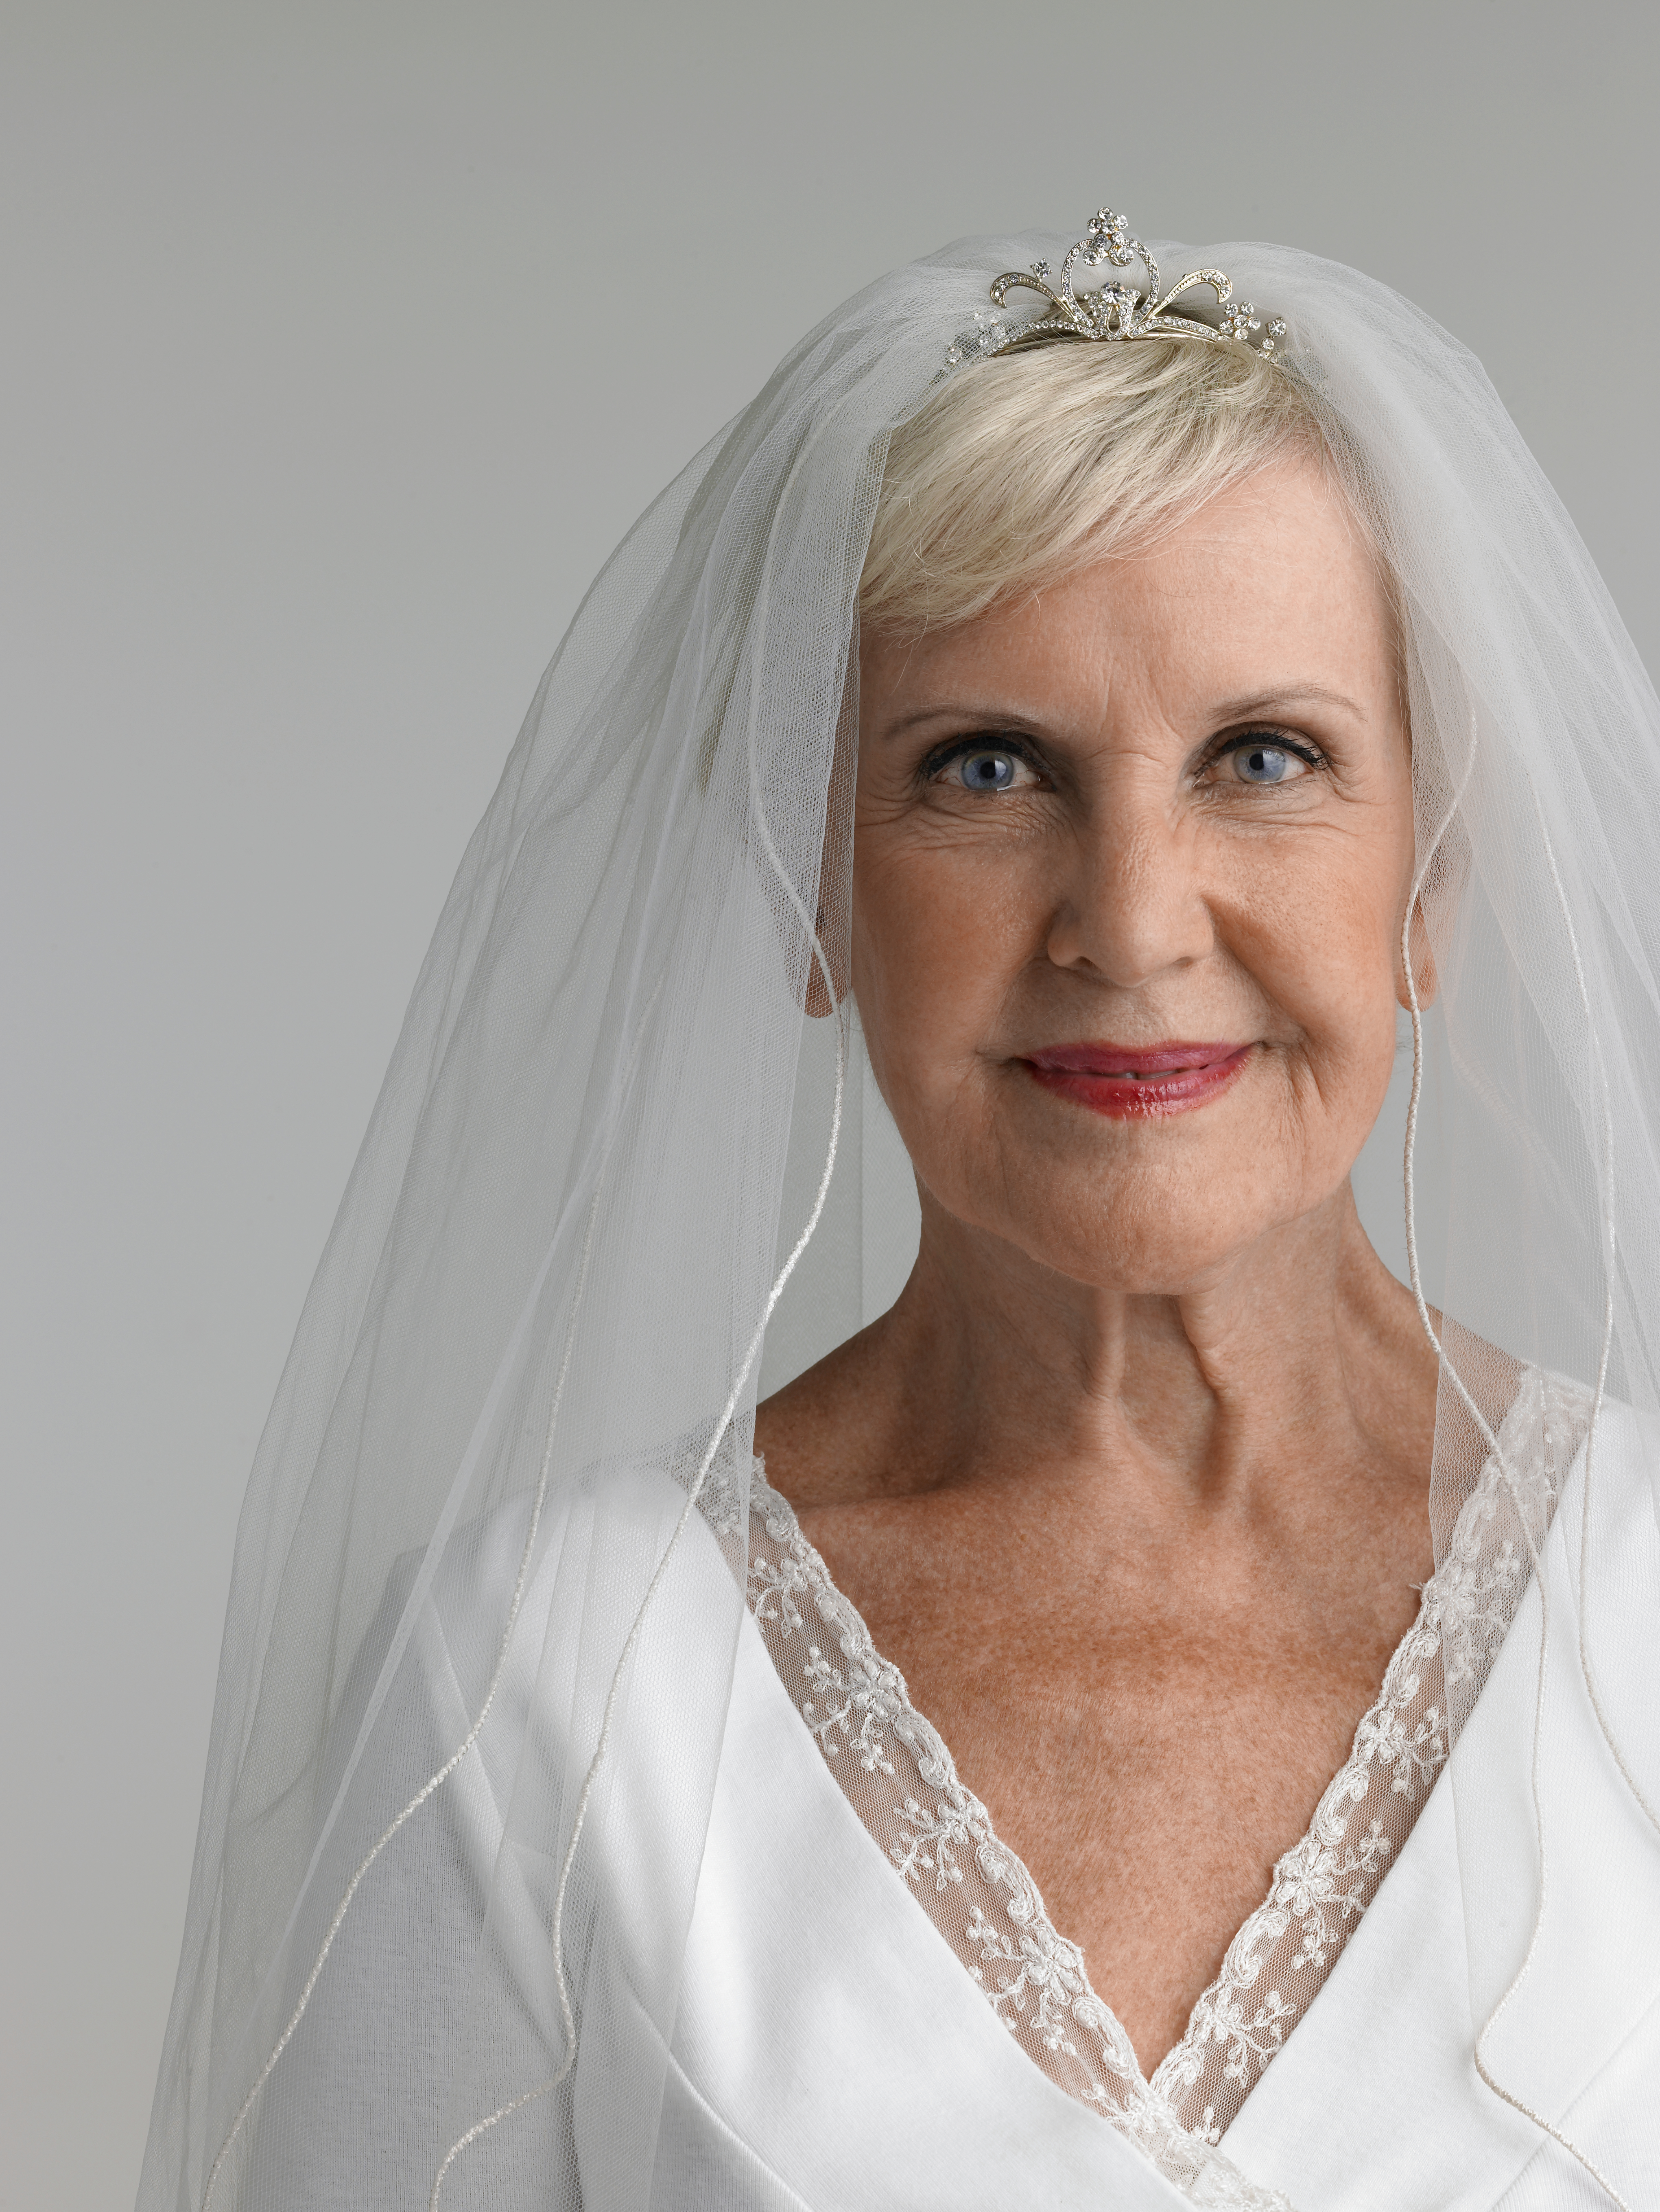 Ältere Frau im Hochzeitskleid, Porträt | Quelle: Getty Images